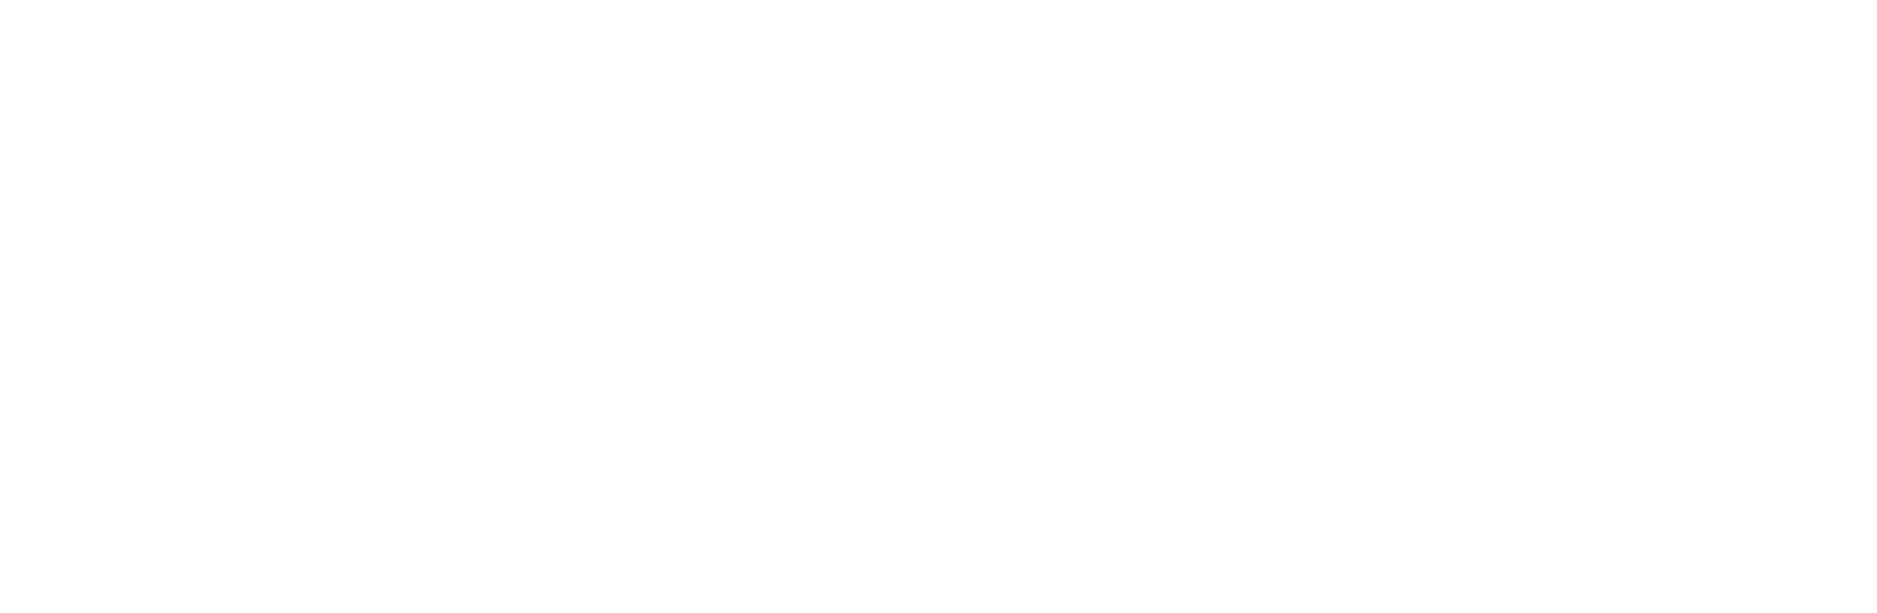 woodvalley_mobile_logo_white-01